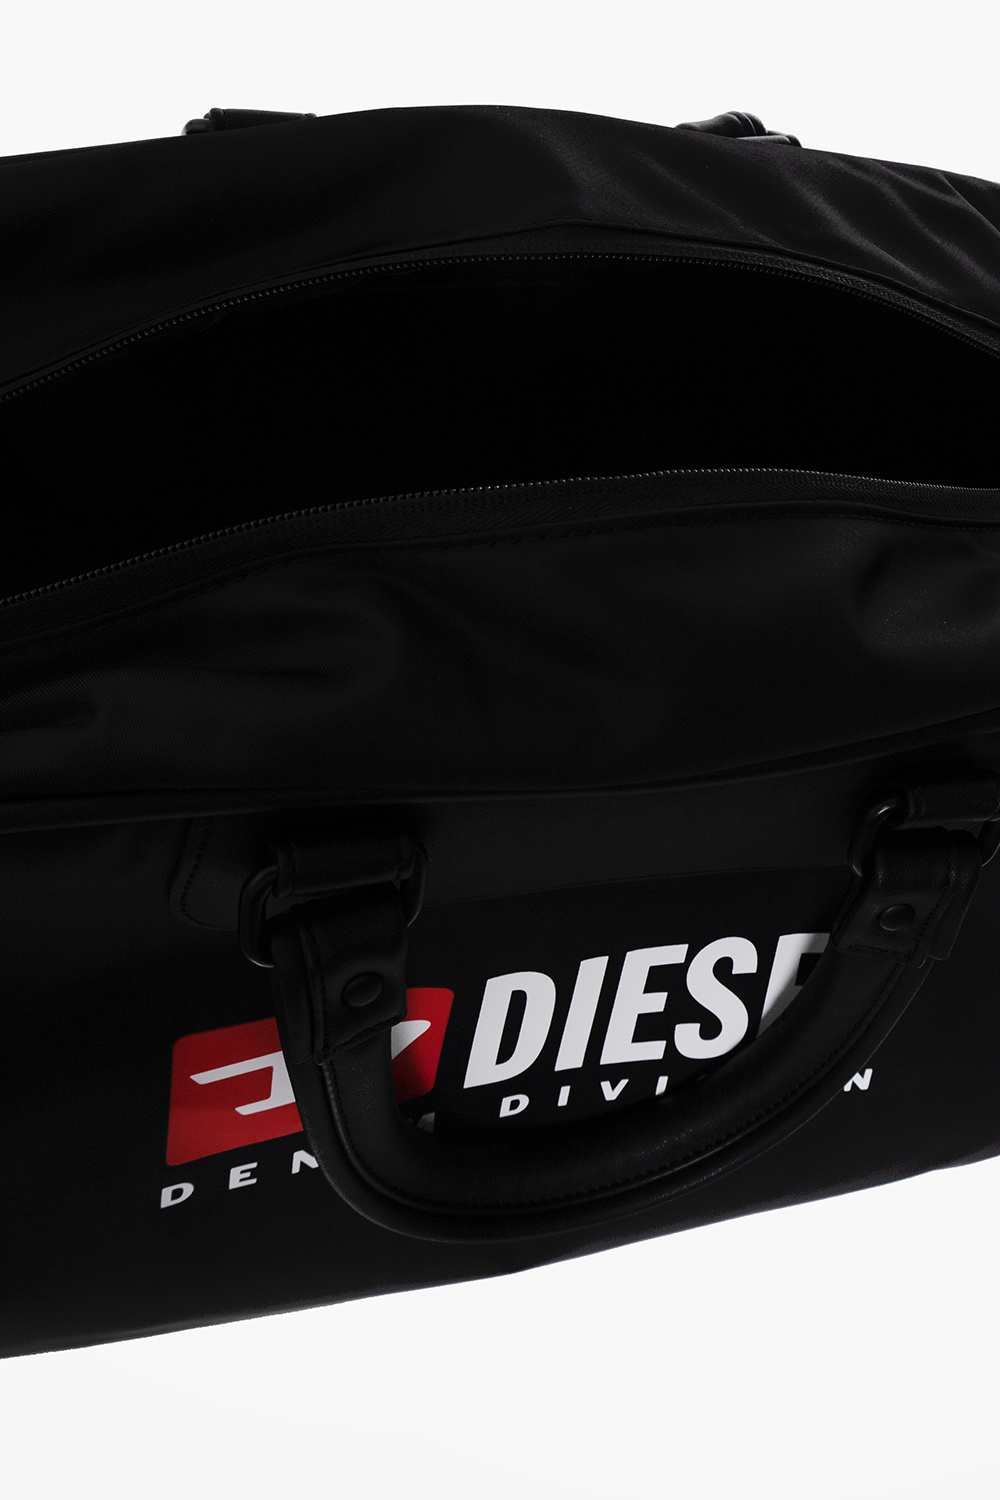 Diesel ‘RINKE’ duffel Biker bag